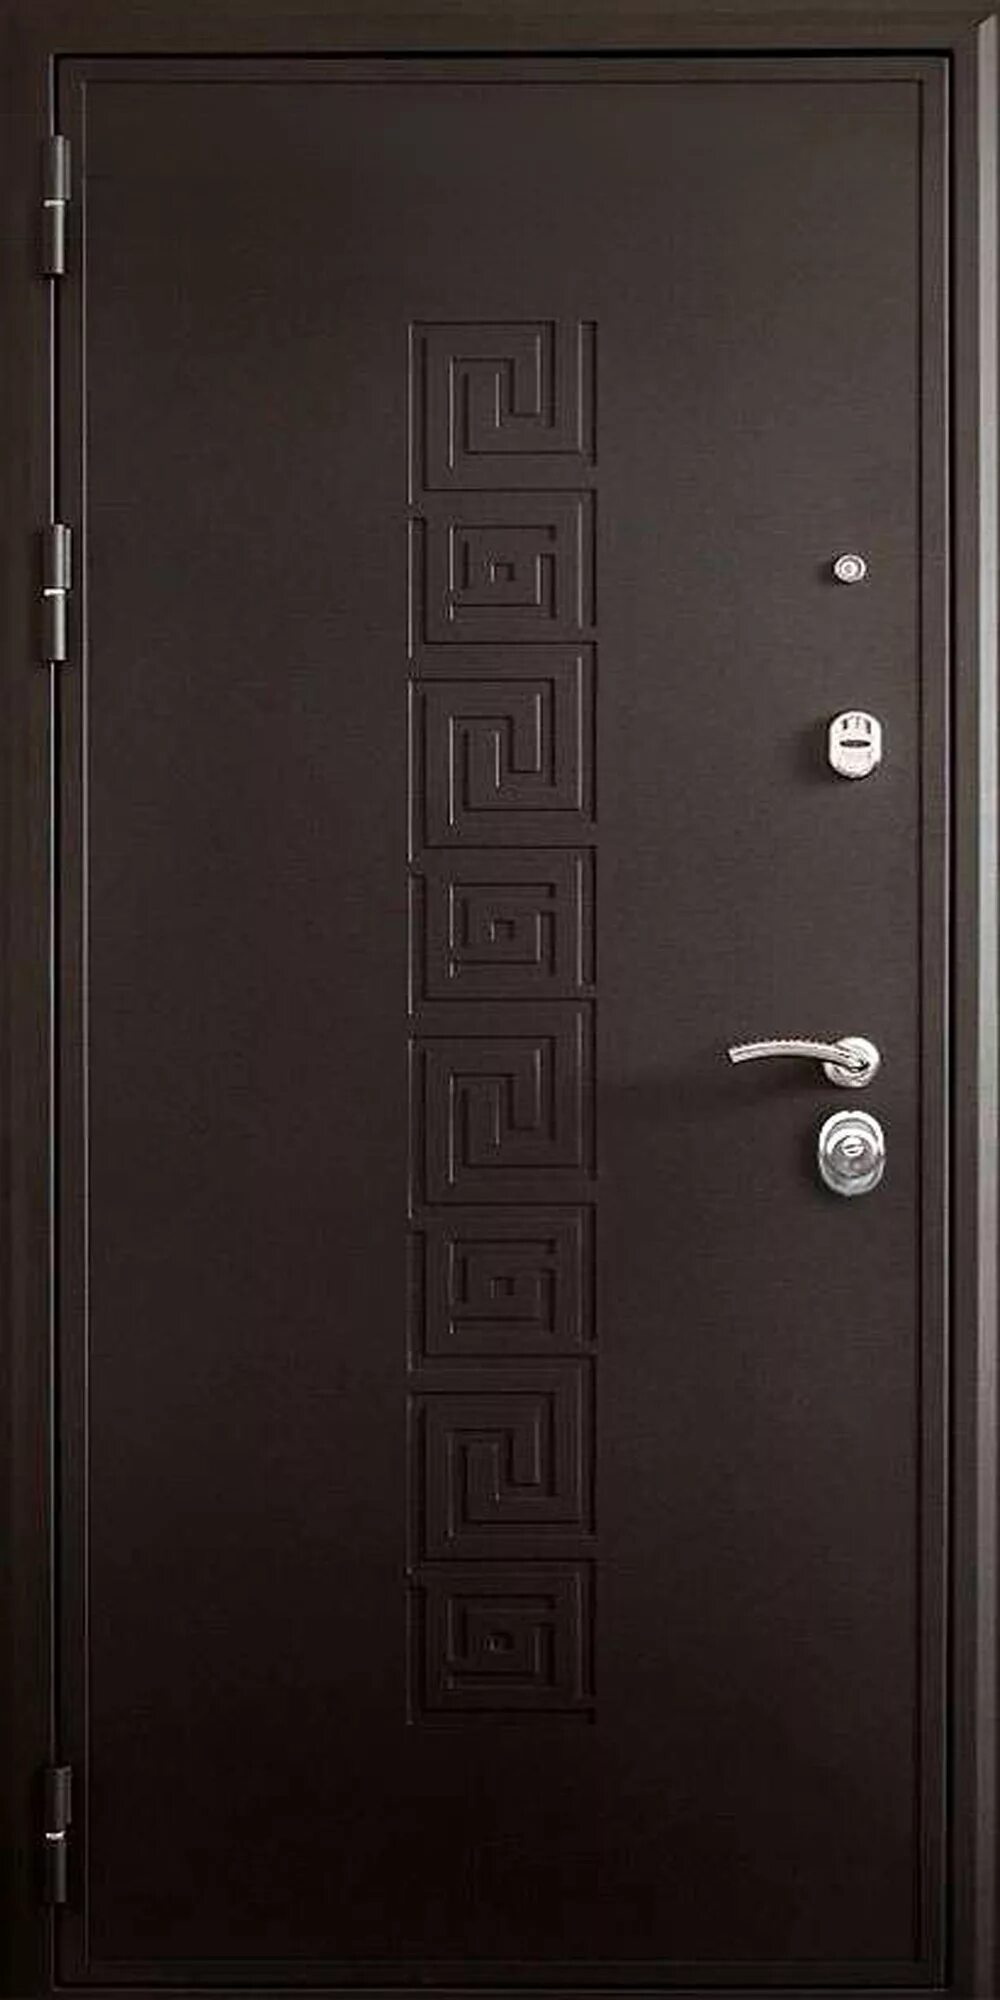 Дверь Кондор Греция. Входная дверь Гелиос. Корсика 5с дверь входная 3х петельняя с черным стеклом. Входная дверь с греческим орнаментом.